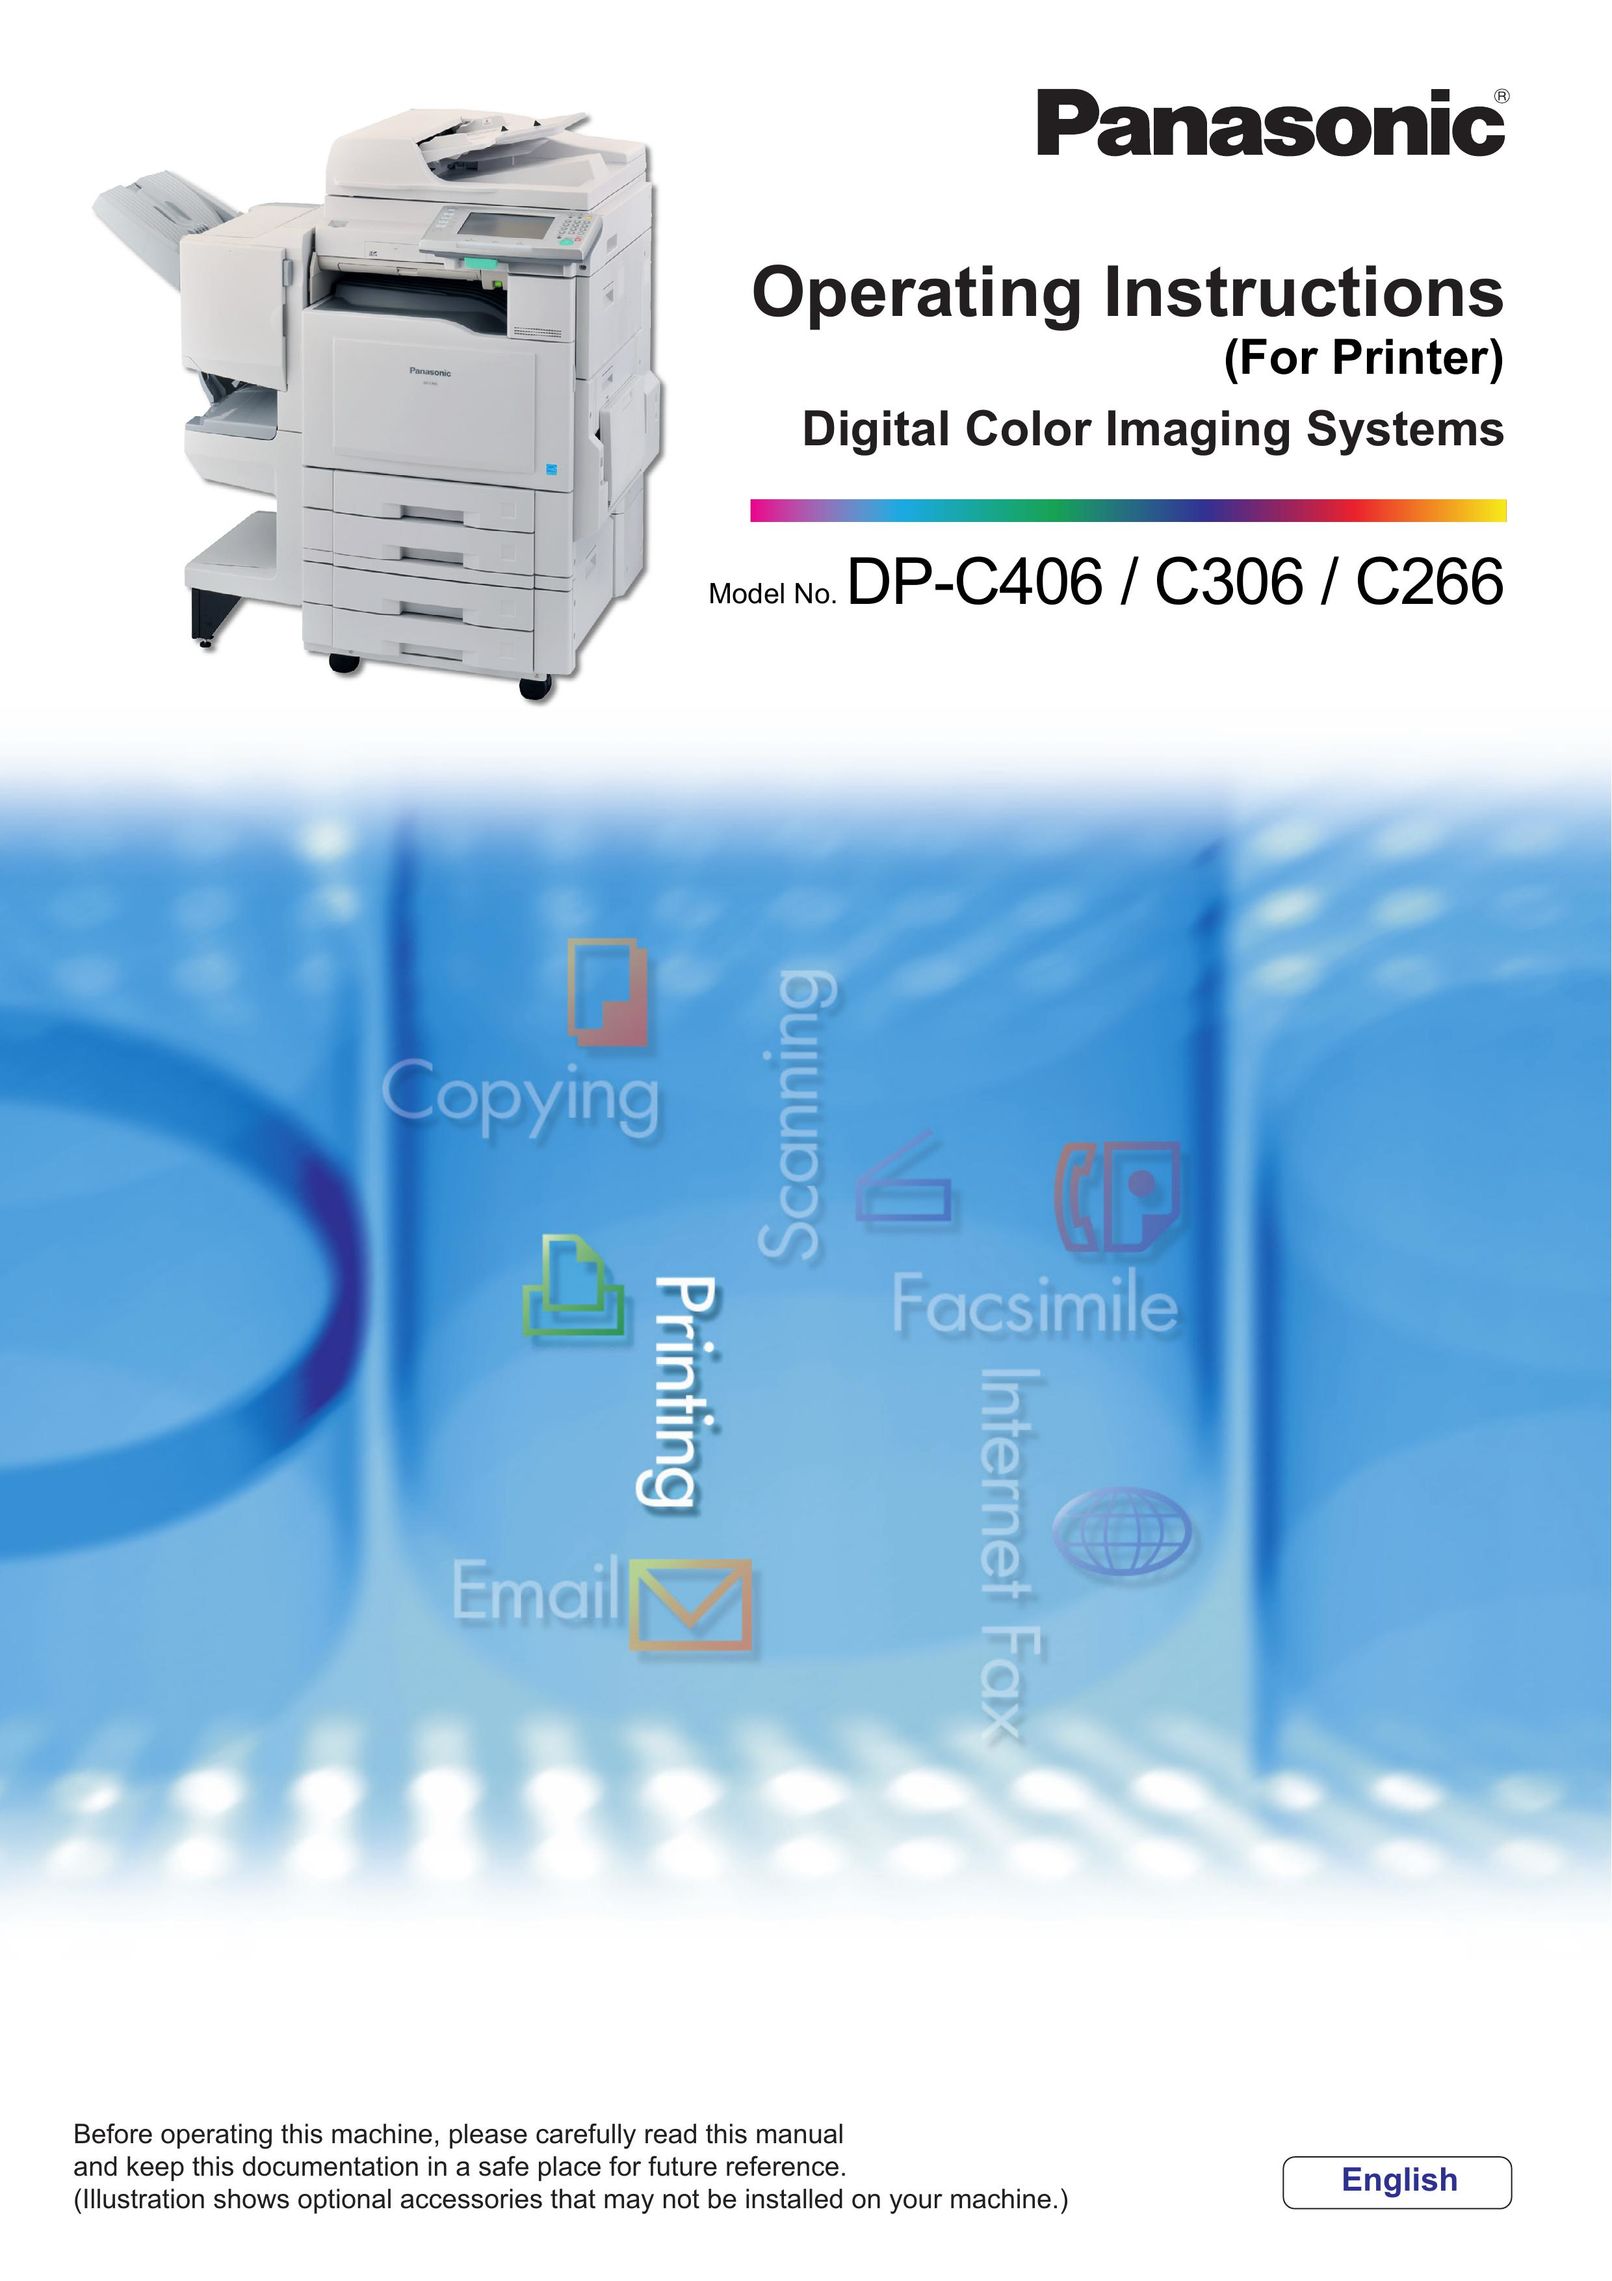 Panasonic DP-C266 Printer User Manual